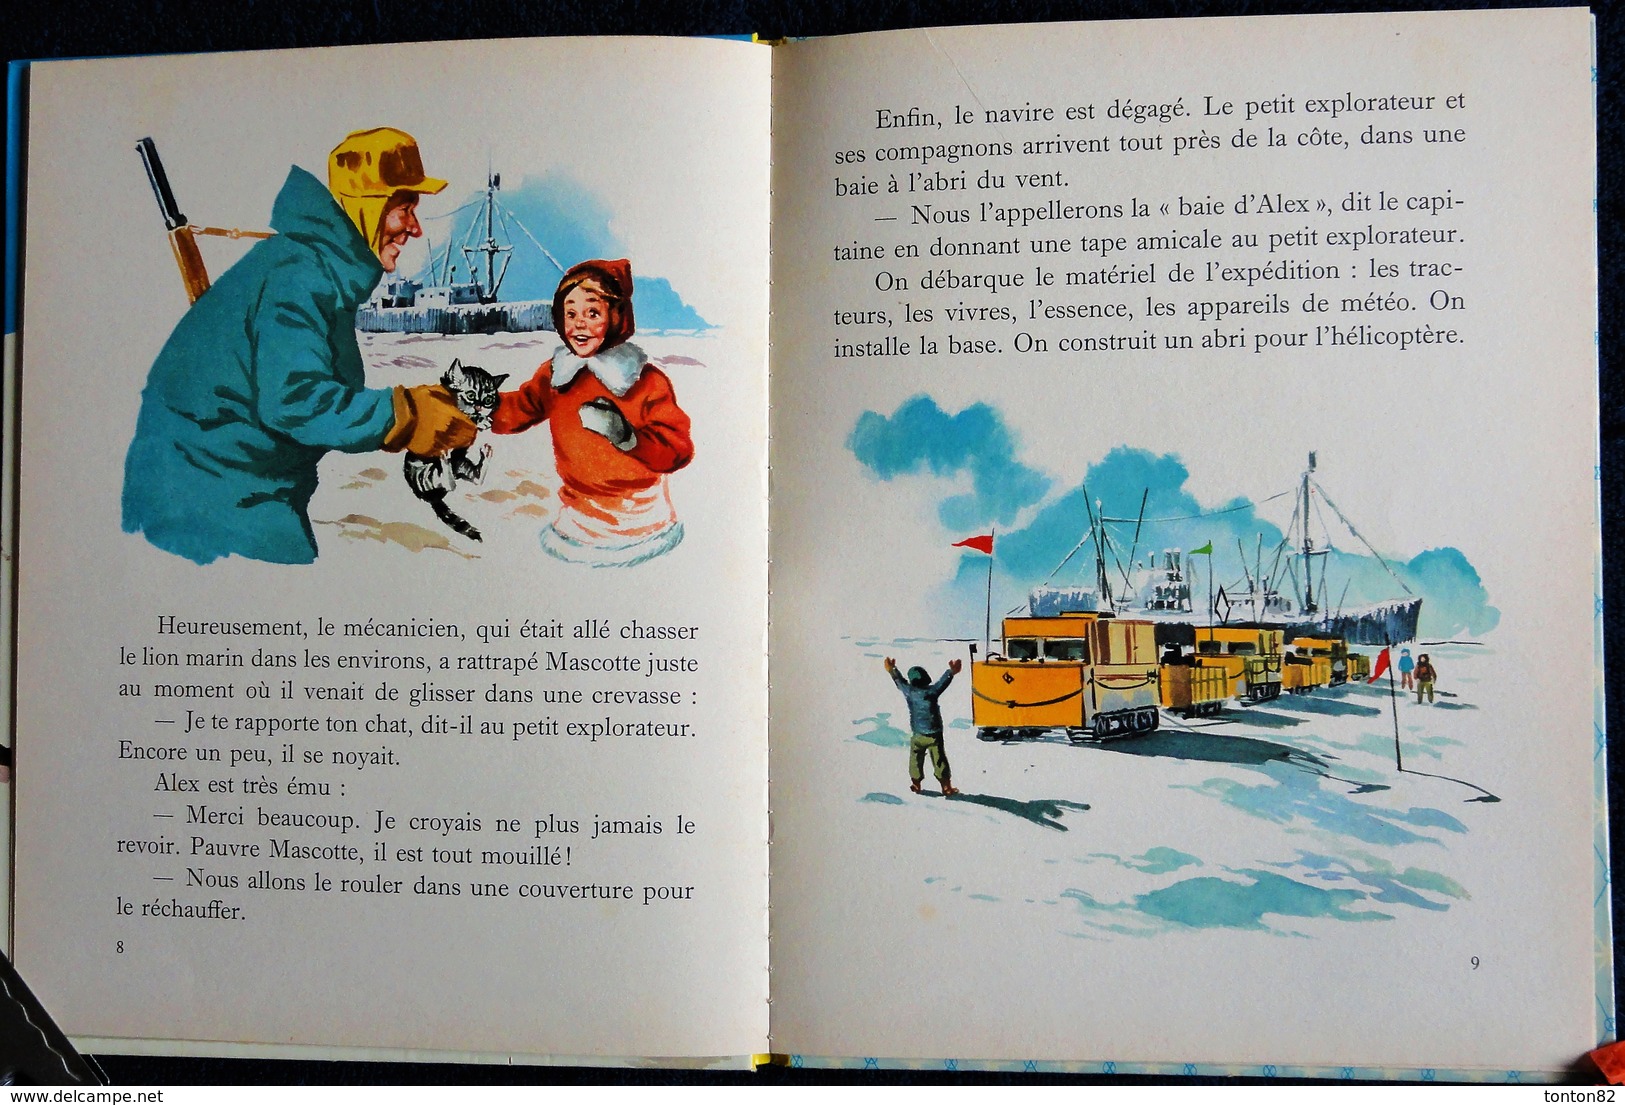 G. Delahaye  - L. Et F. Funcken - Le Petit Explorateur - Collection Farandole  - Casterman - ( 1961 ) - Martine